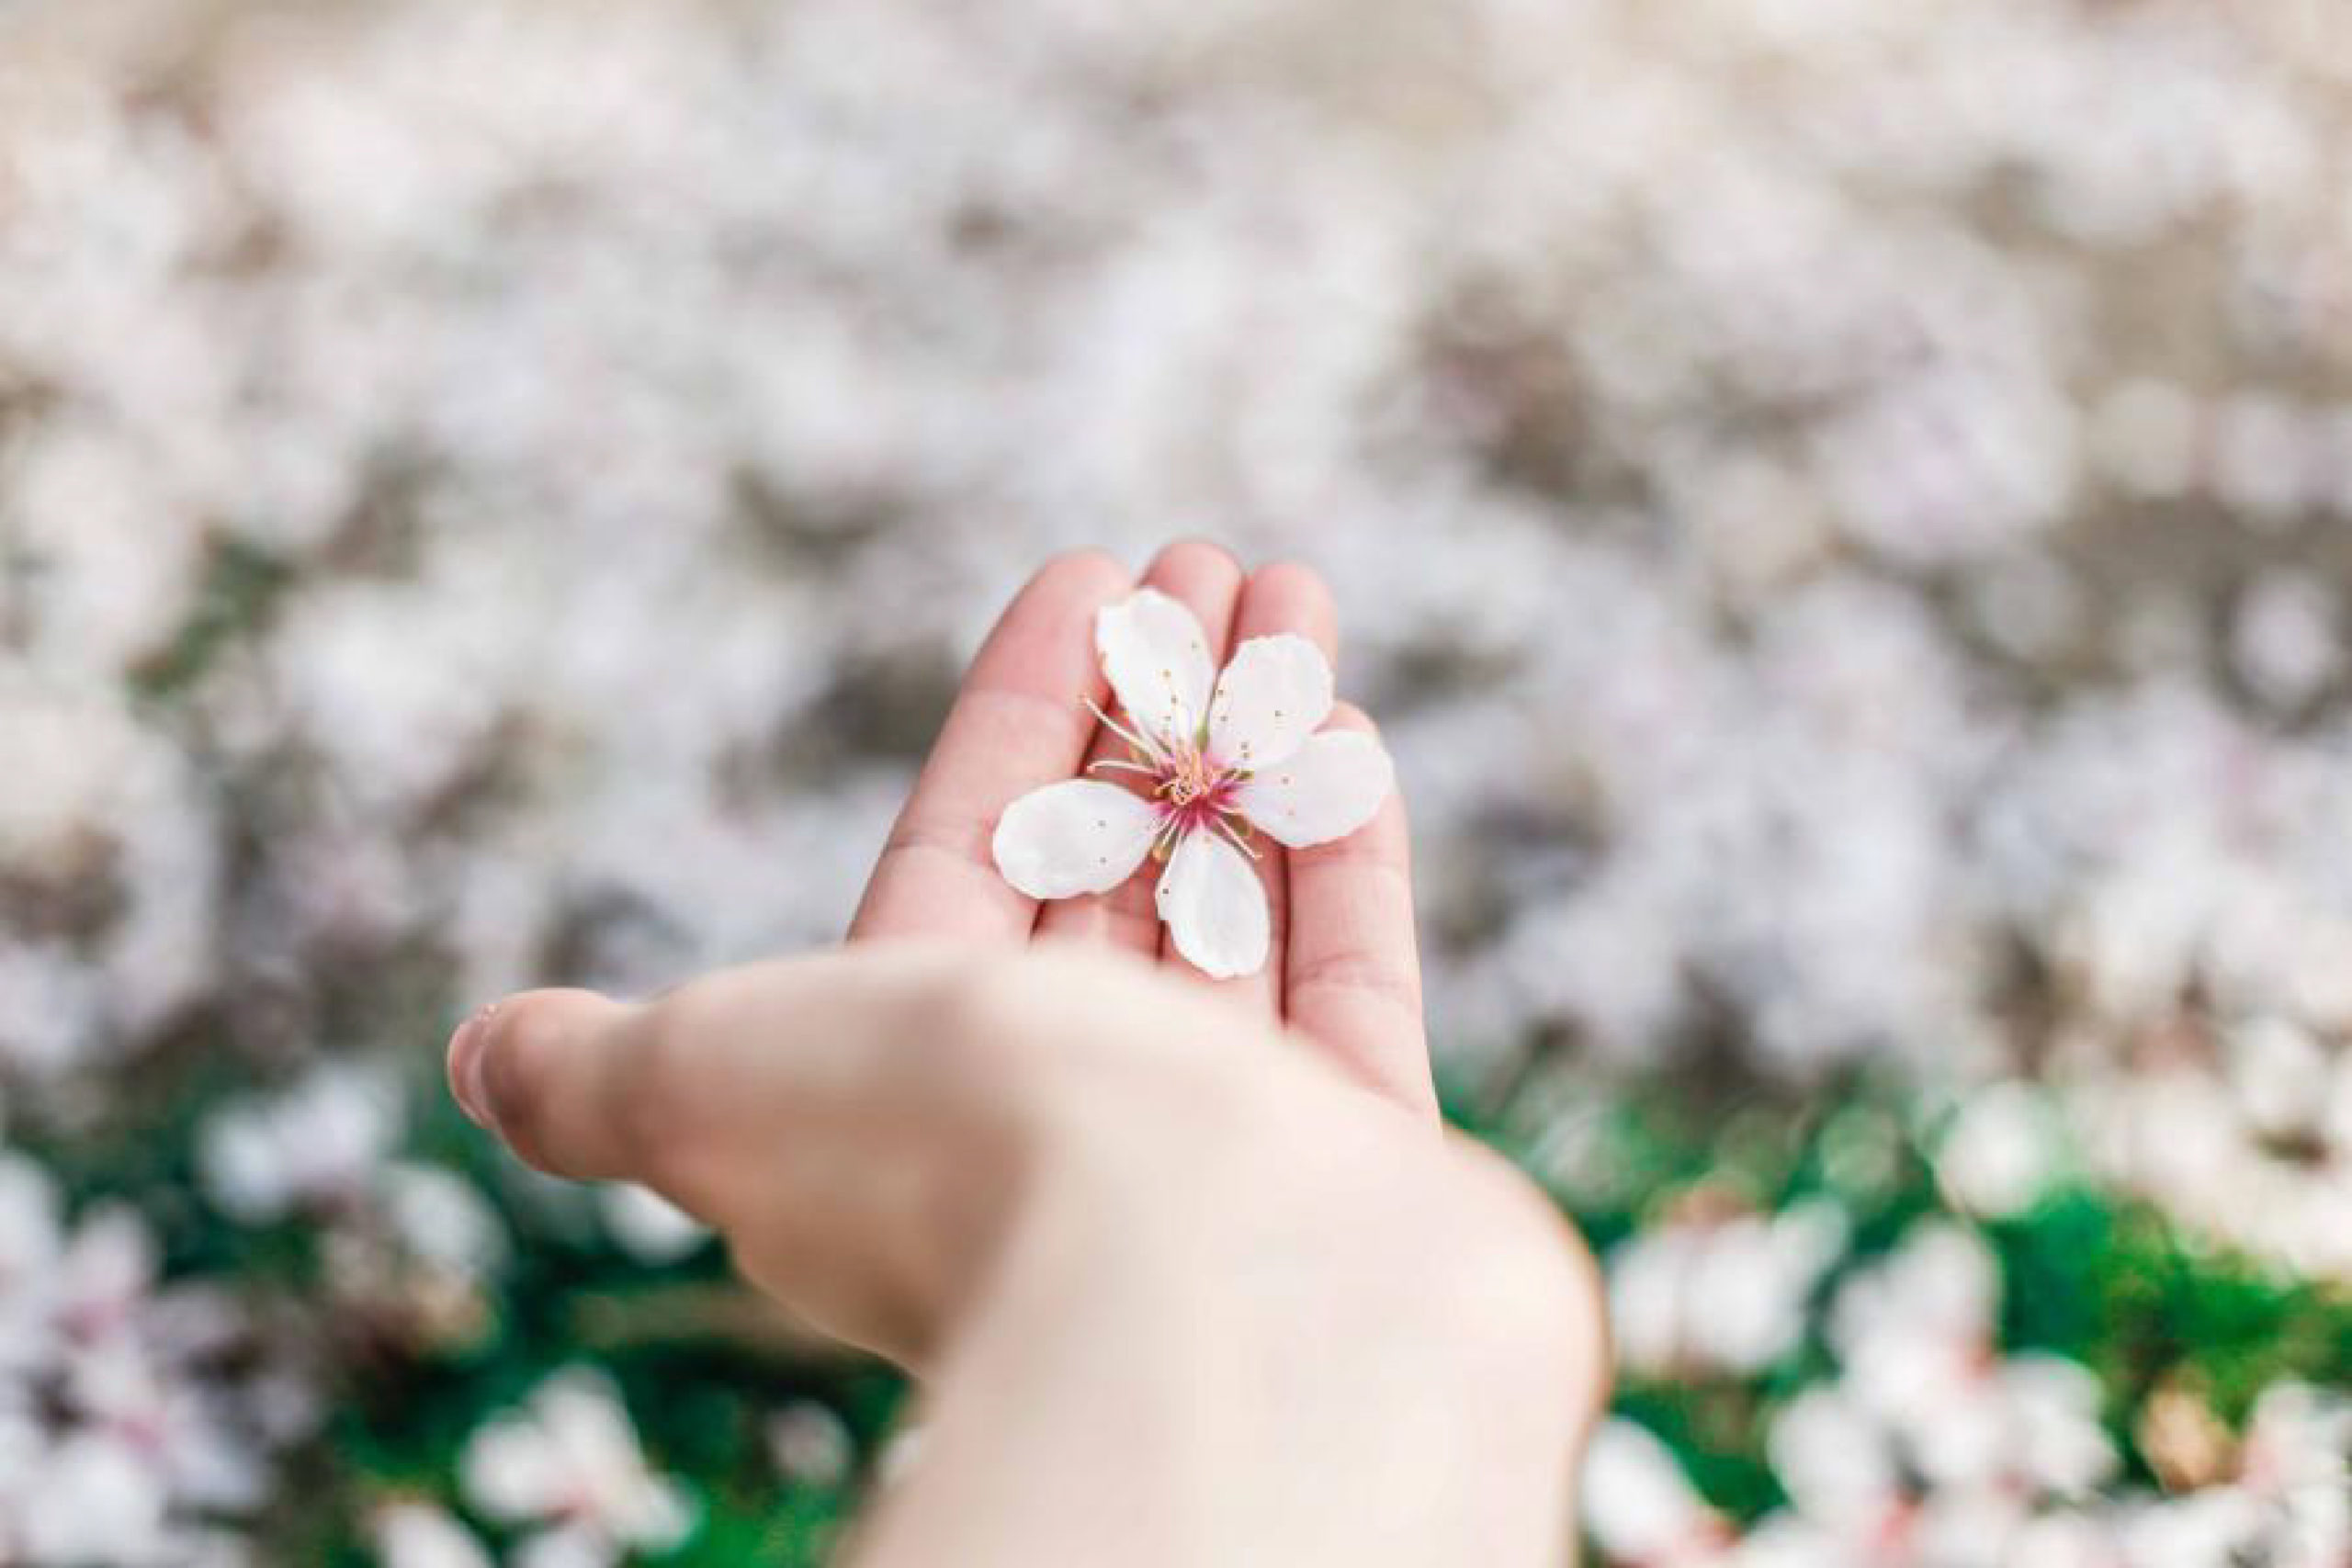 Mano de chica sujetando una flor blanca y rosa